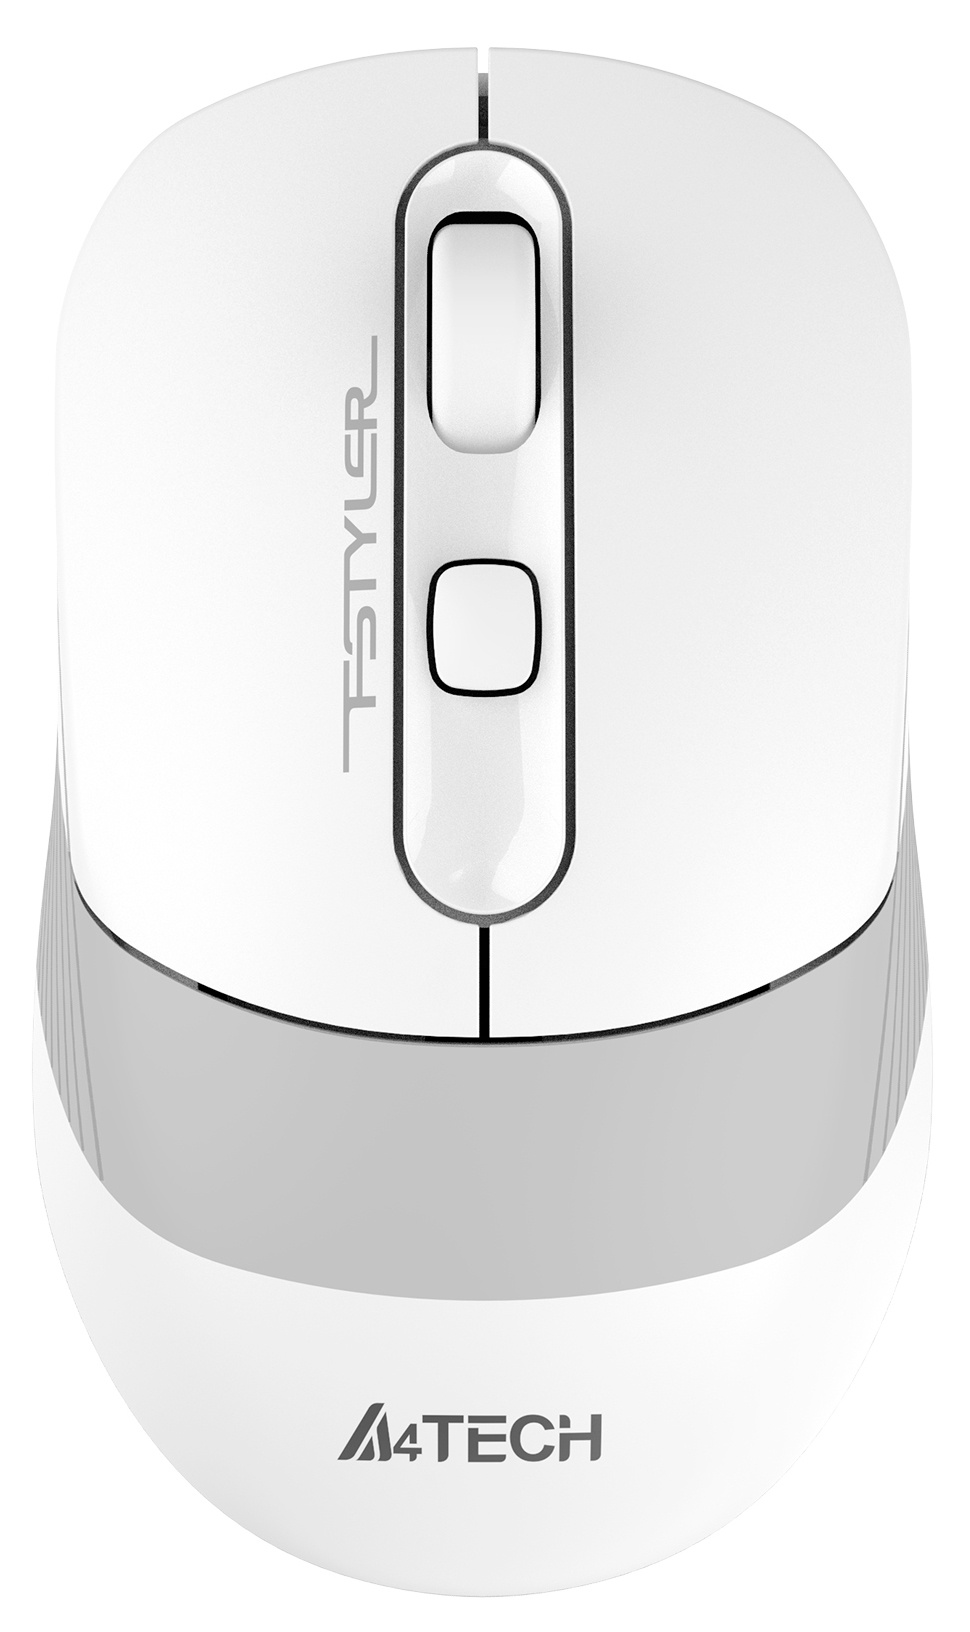 Мышь A4Tech Fstyler FB10C белый/серый оптическая (2400dpi) беспроводная BT/Radio USB (4but)